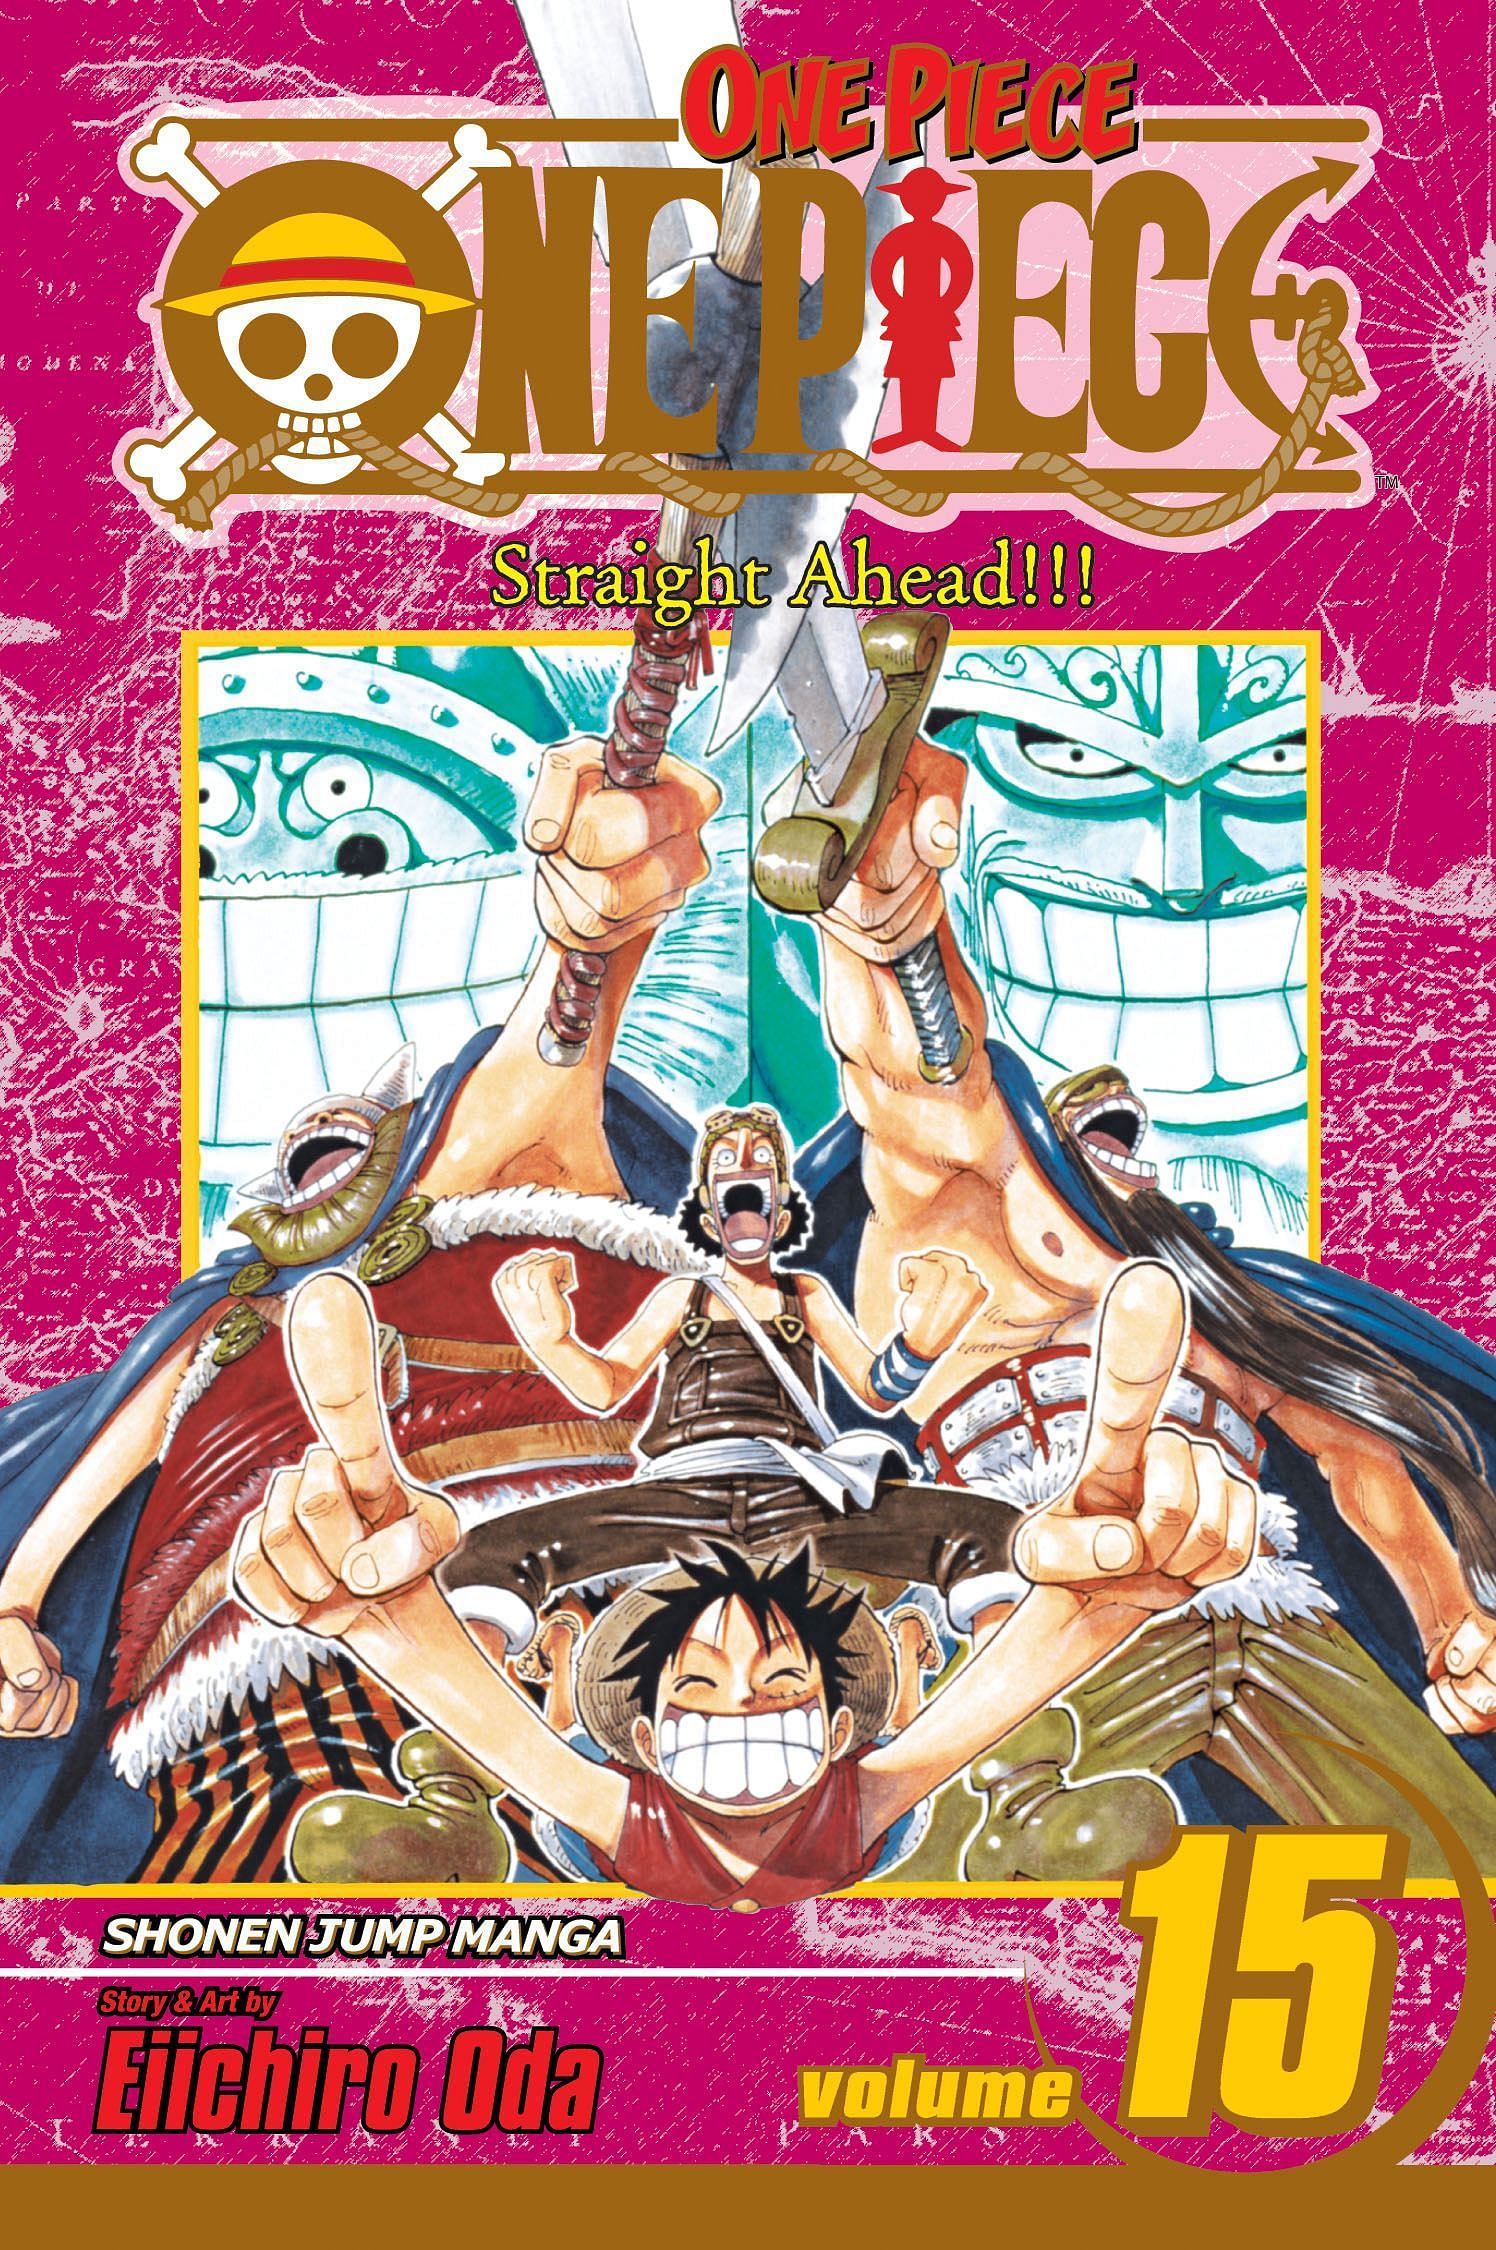 The cover art for One Piece Volume 15 (Image via Shueisha)